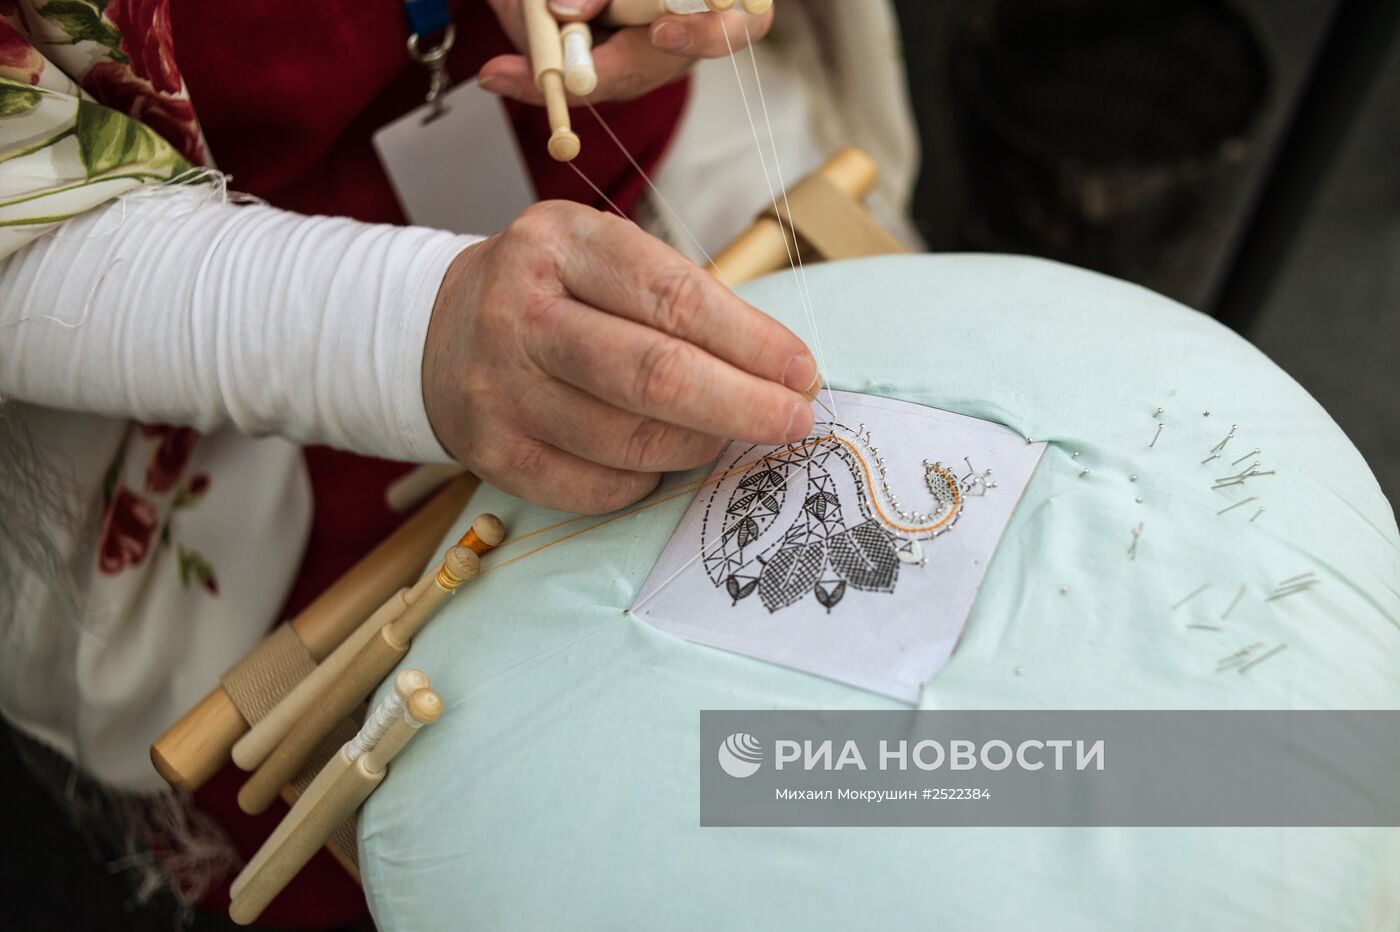 Всероссийский фестиваль и выставка народной культуры в Сочи